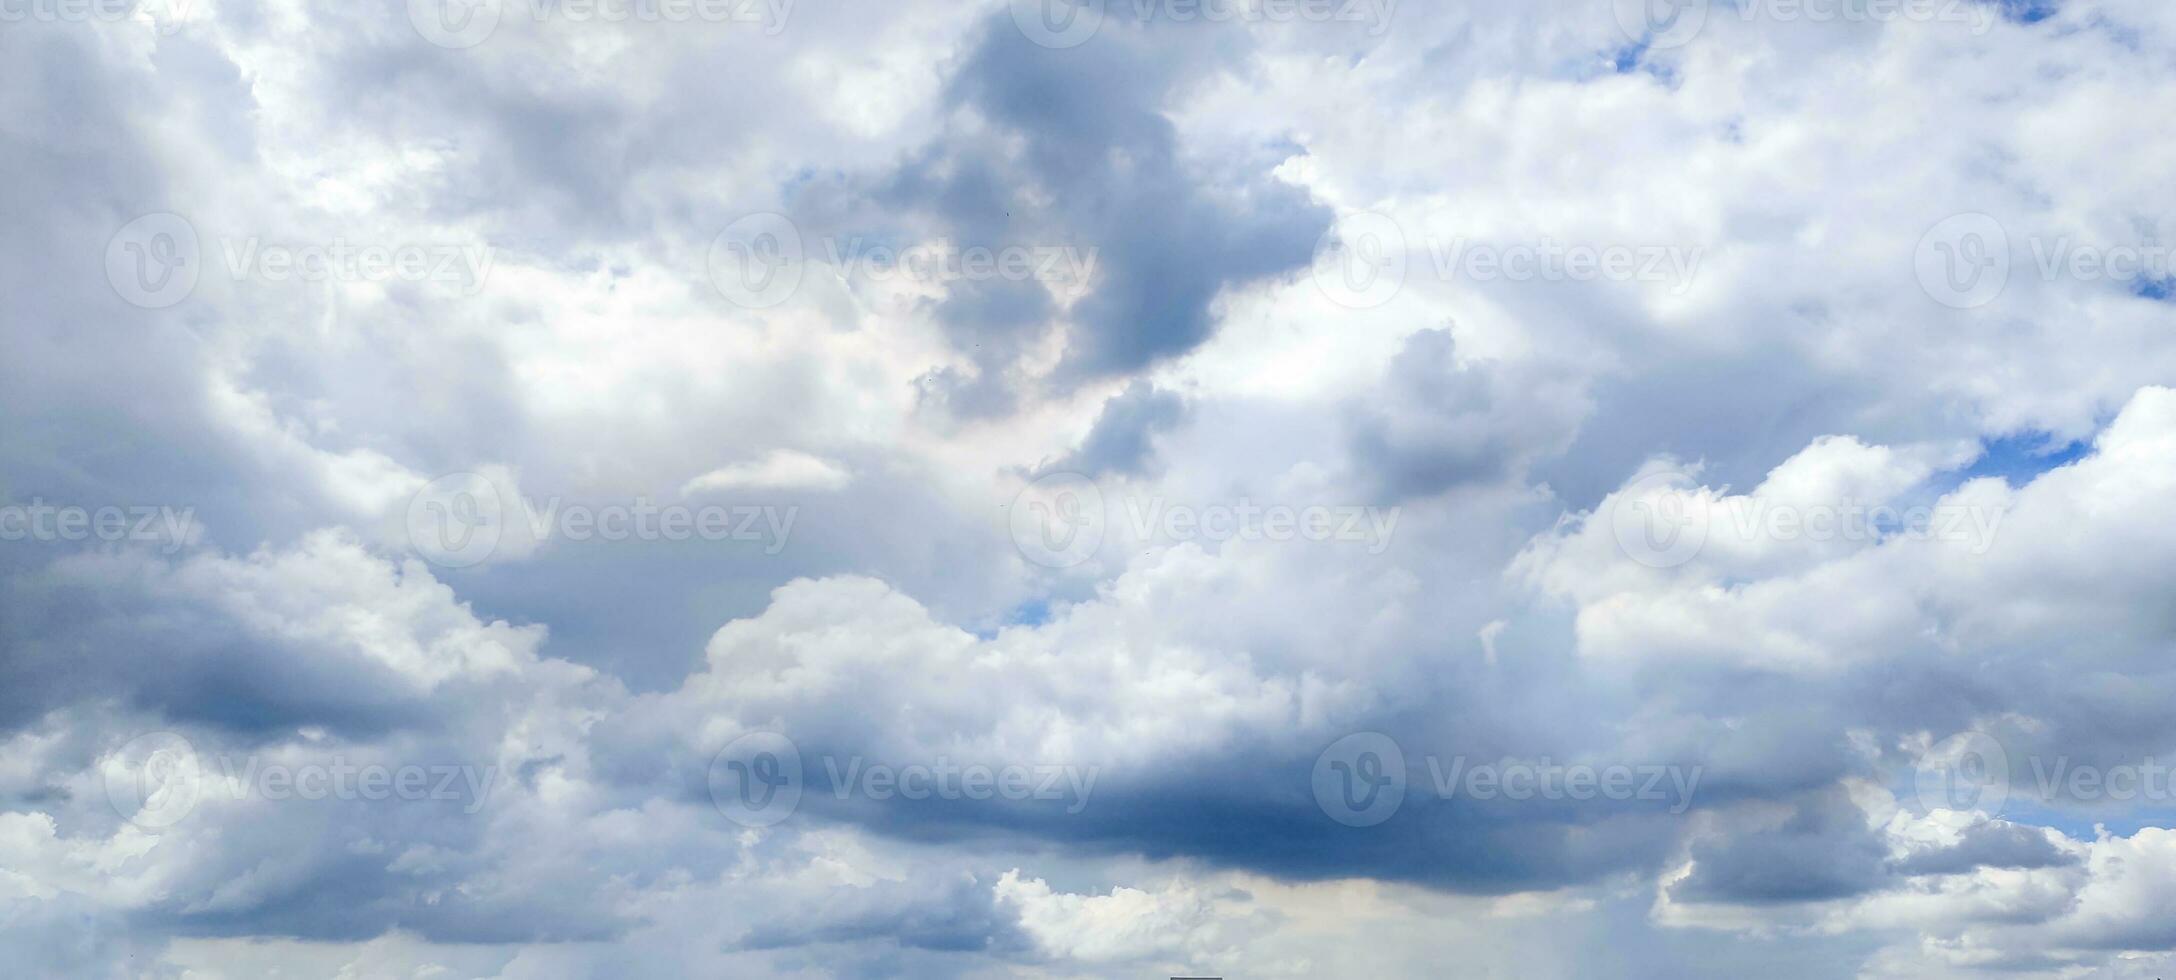 blauw lucht en wit wolk Doorzichtig zomer visie, een groot wit wolk is in de lucht, een blauw lucht met wolken en sommige wit wolken foto